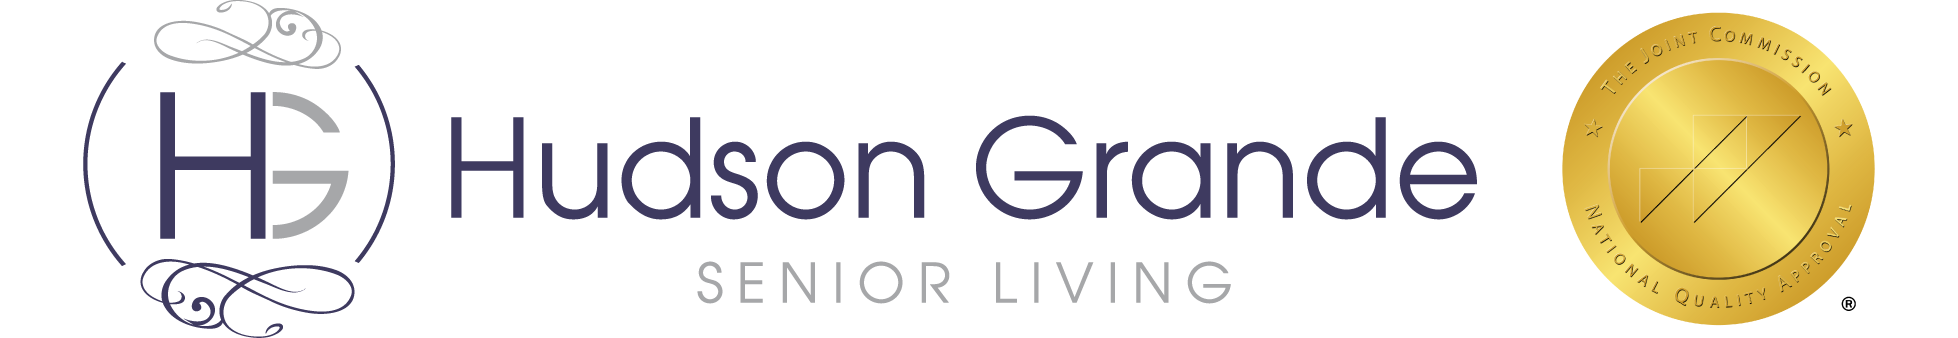 Hudson Grande Senior Living - Joint Commission Award Badge